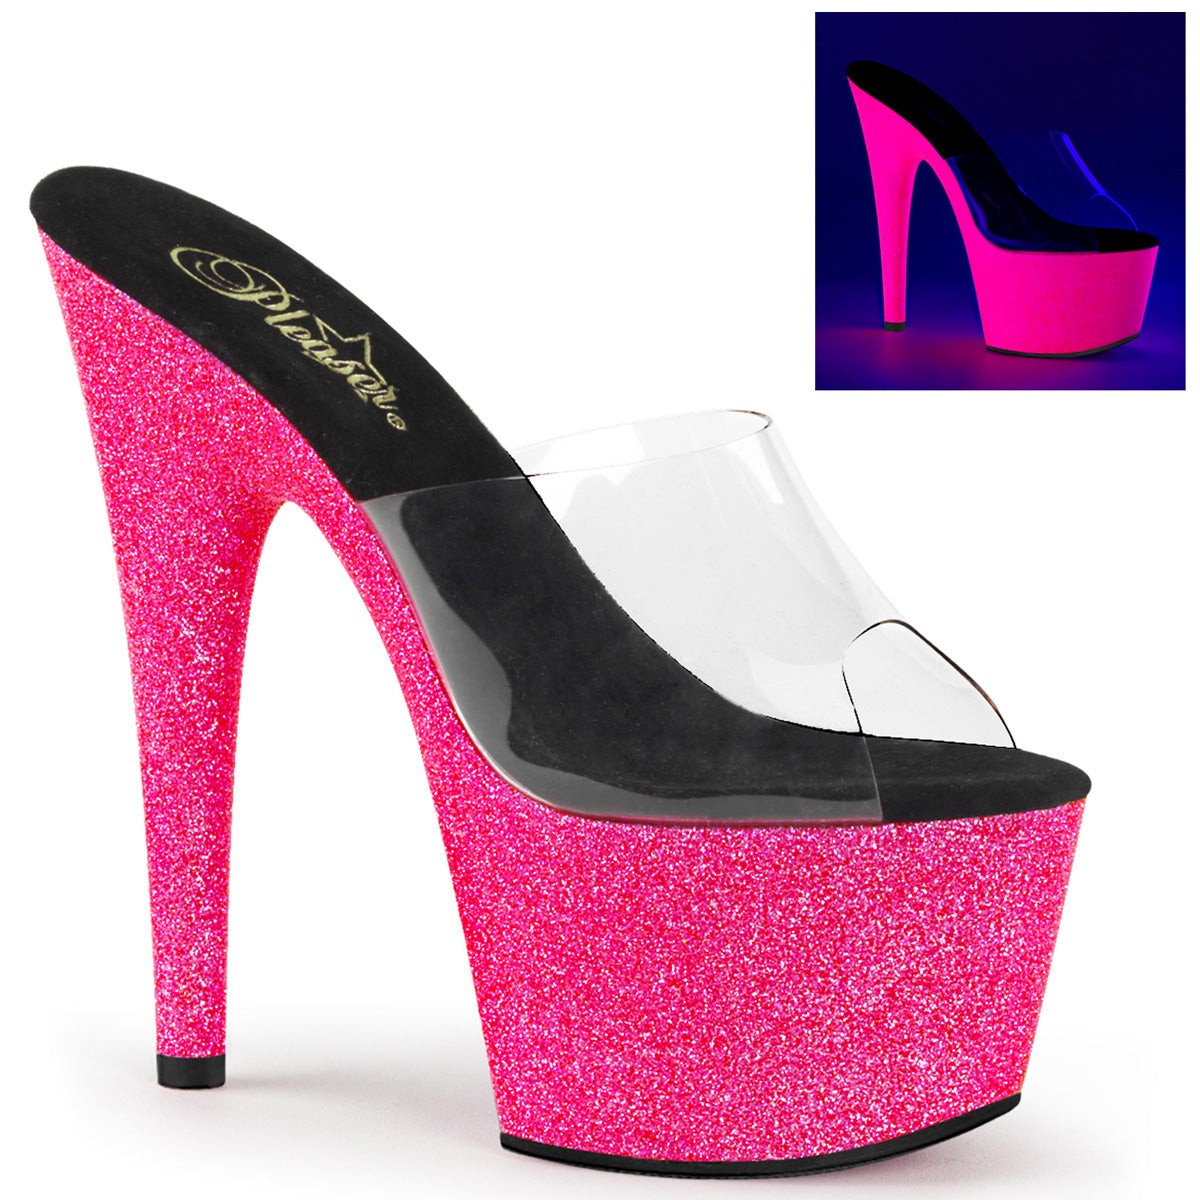 ADORE-701UVG Pleaser 7 Inch Heel Pink Neon Glitter Platform Slip On Sandals